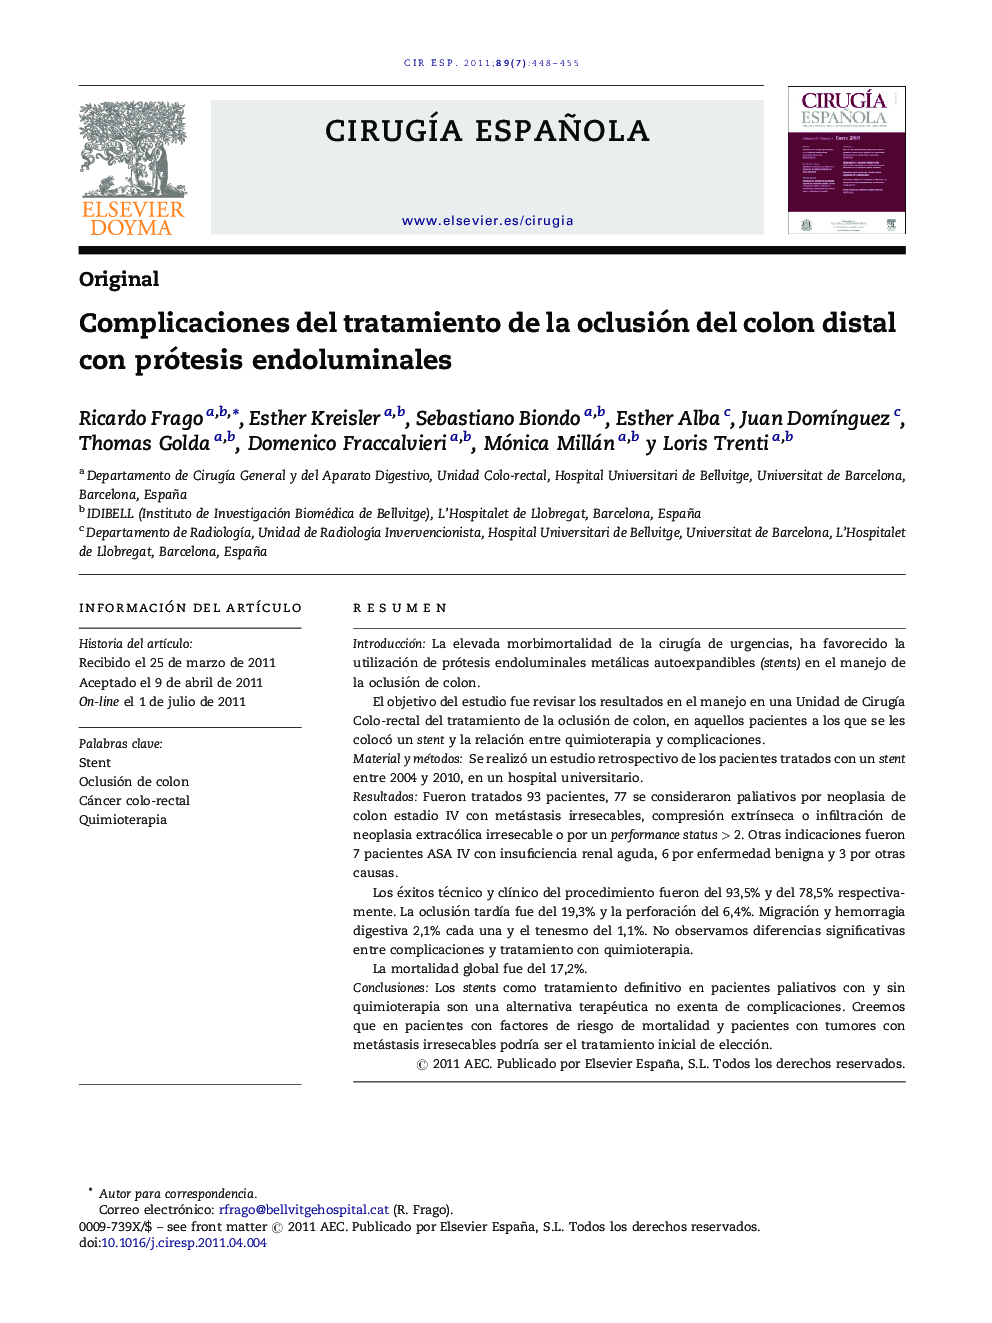 Complicaciones del tratamiento de la oclusión del colon distal con prótesis endoluminales